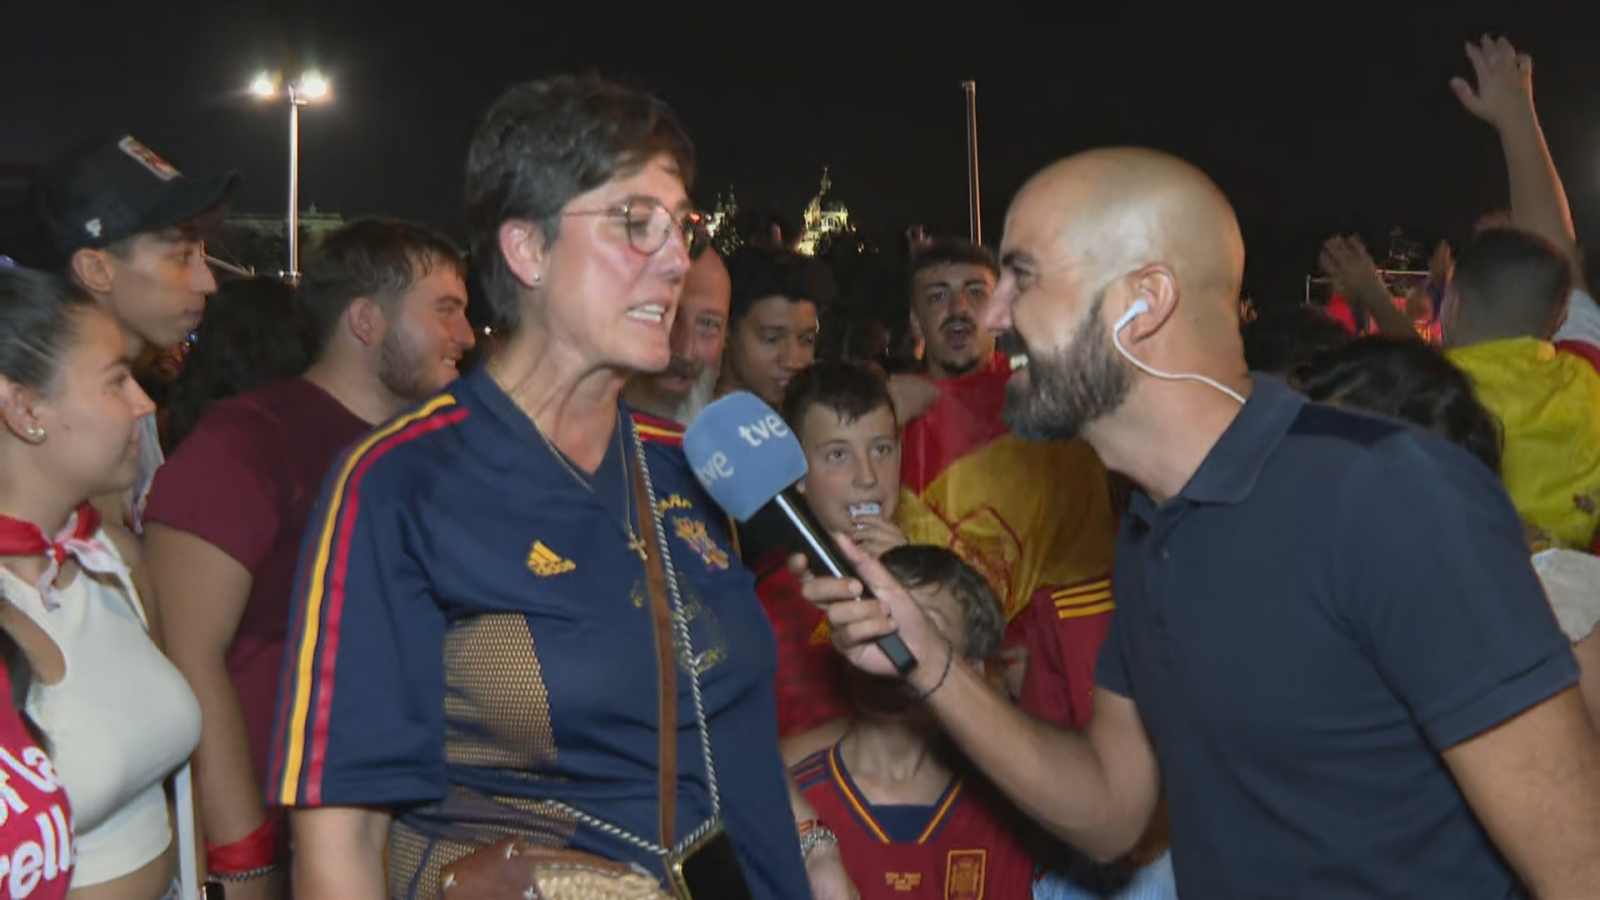 Noelia Tomé, hermana de la nueva seleccionadora Montse Tomé, explicó en la celebración del Mundial cómo nació su pasión por el fútbol